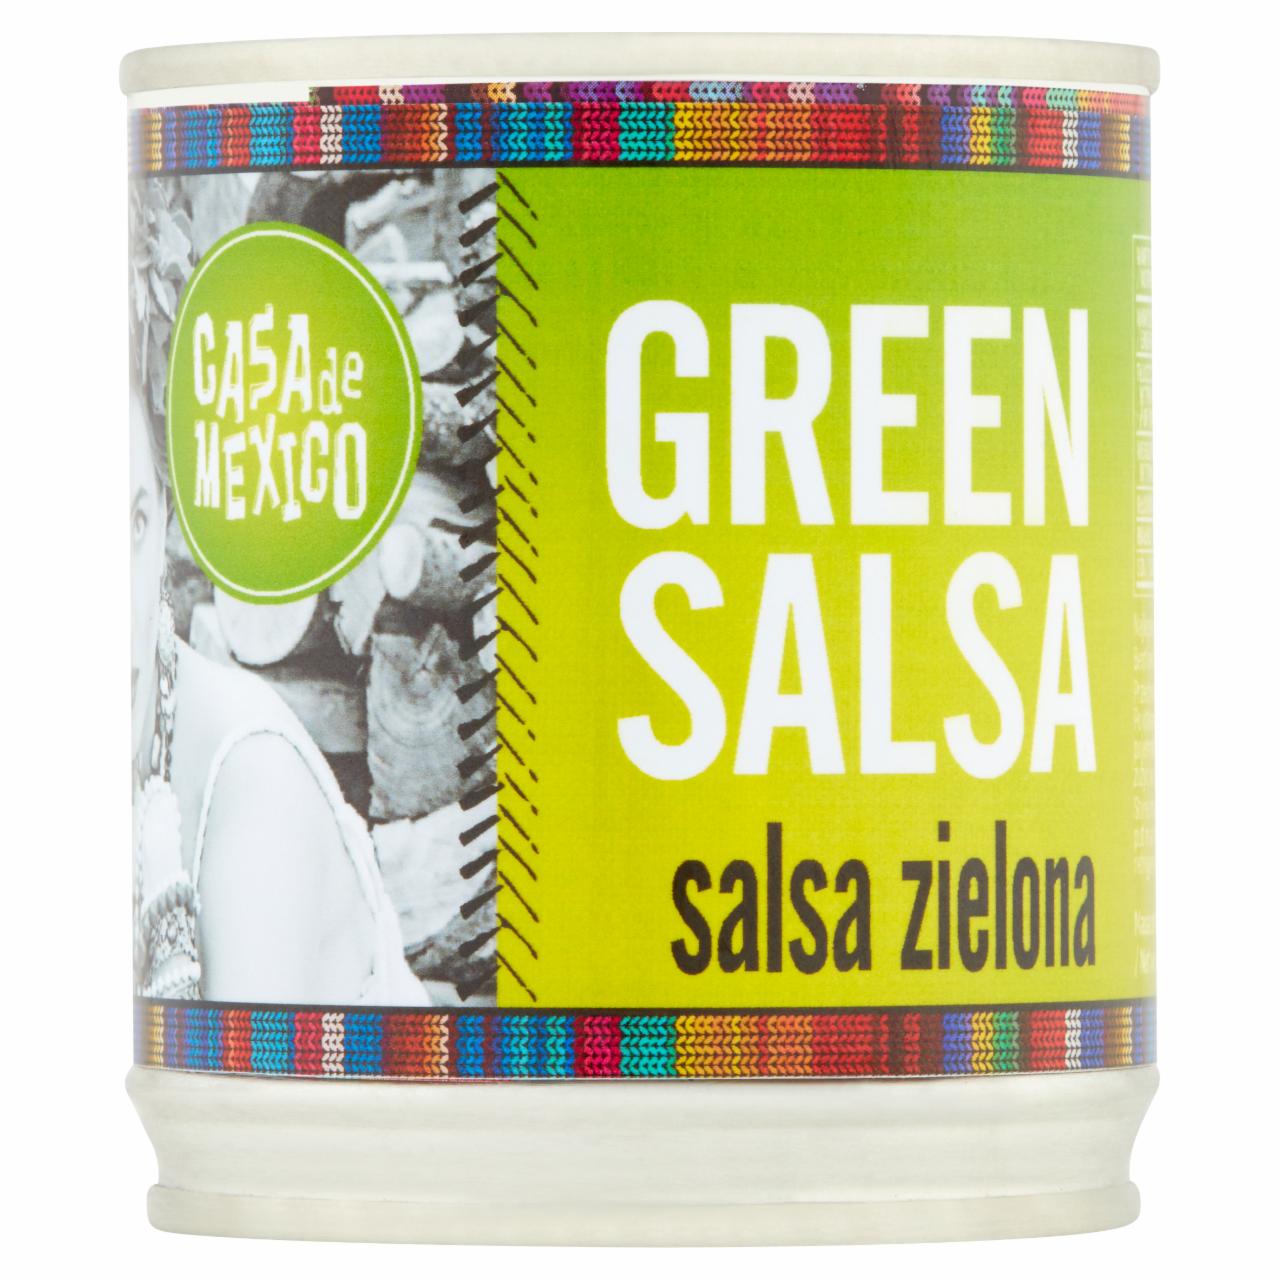 Zdjęcia - Casa de Mexico Salsa zielona 215 g